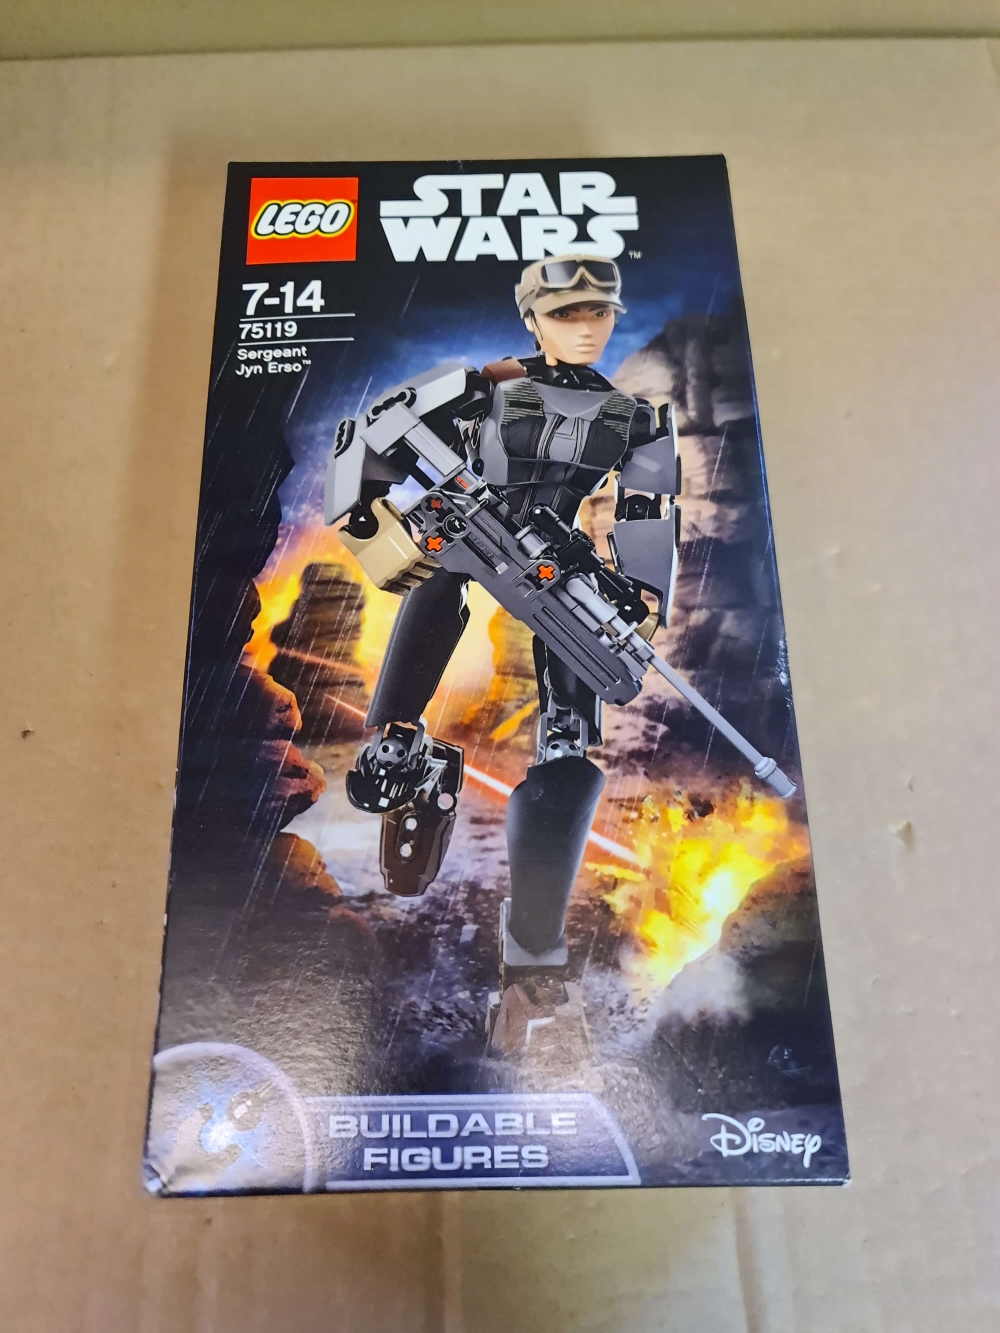 Sett 75119 fra Lego Star Wars serien. 

Nytt og forseglet.